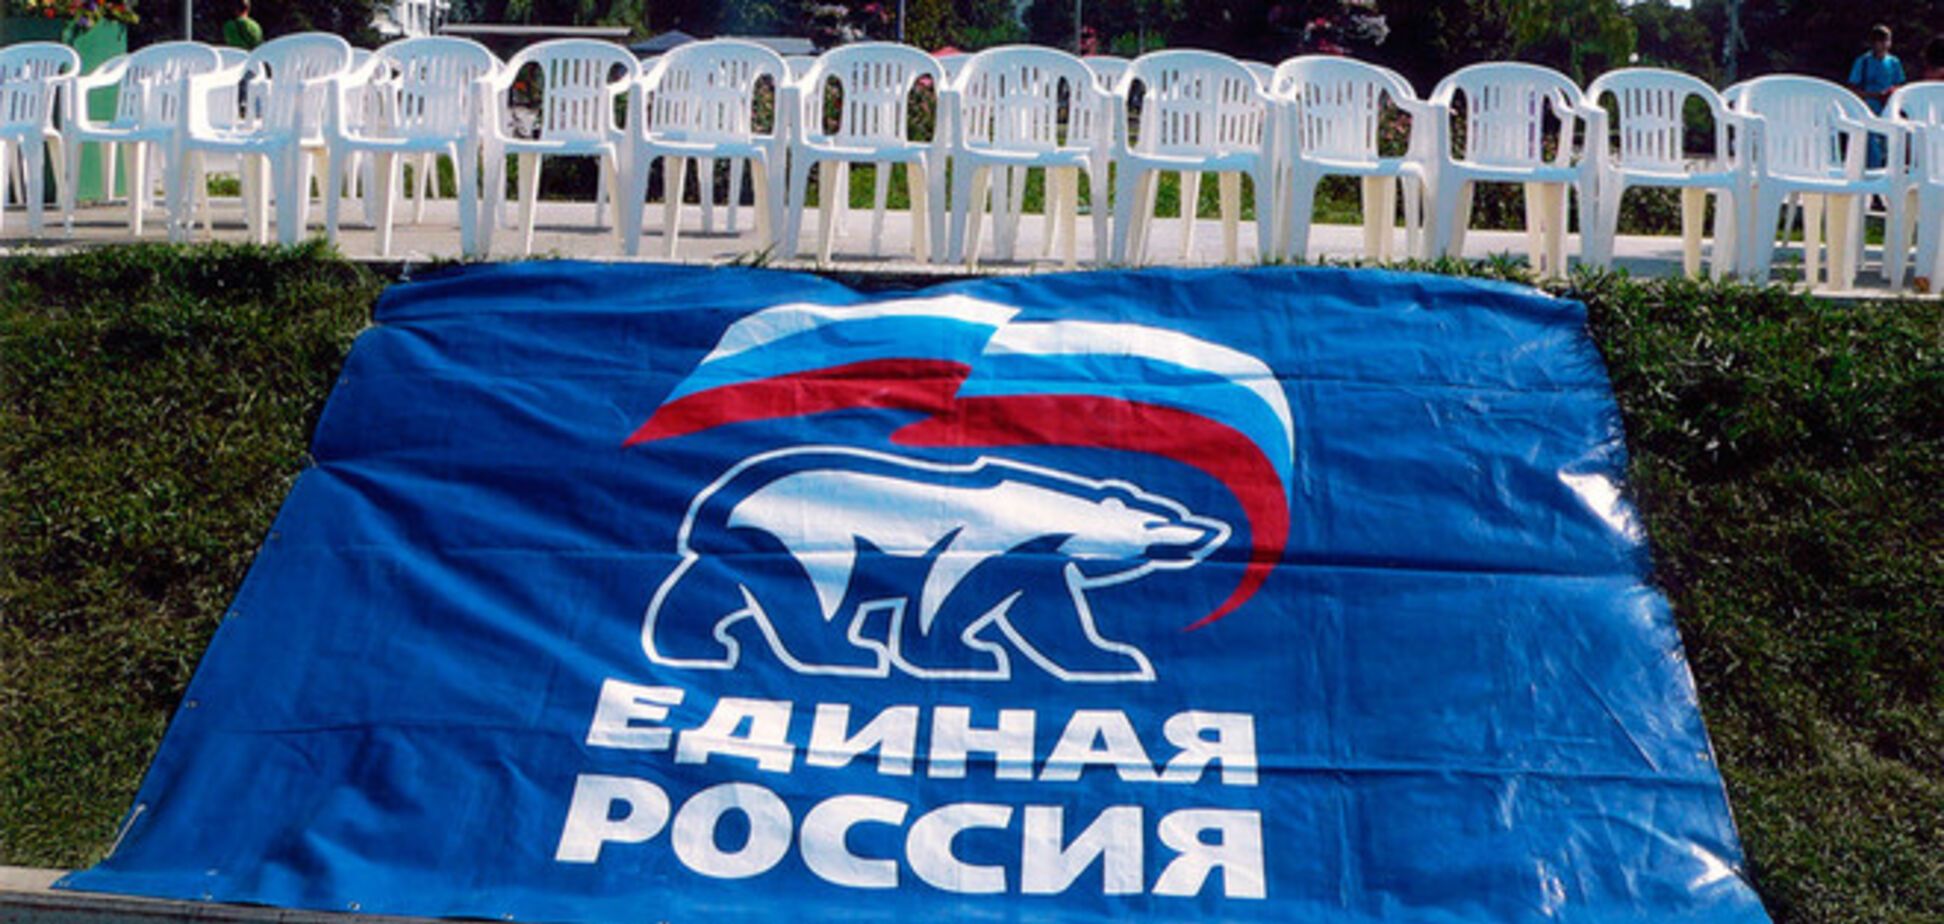 Создатель 'Единой России' рассказал о 'распиле' миллионов в партии Путина